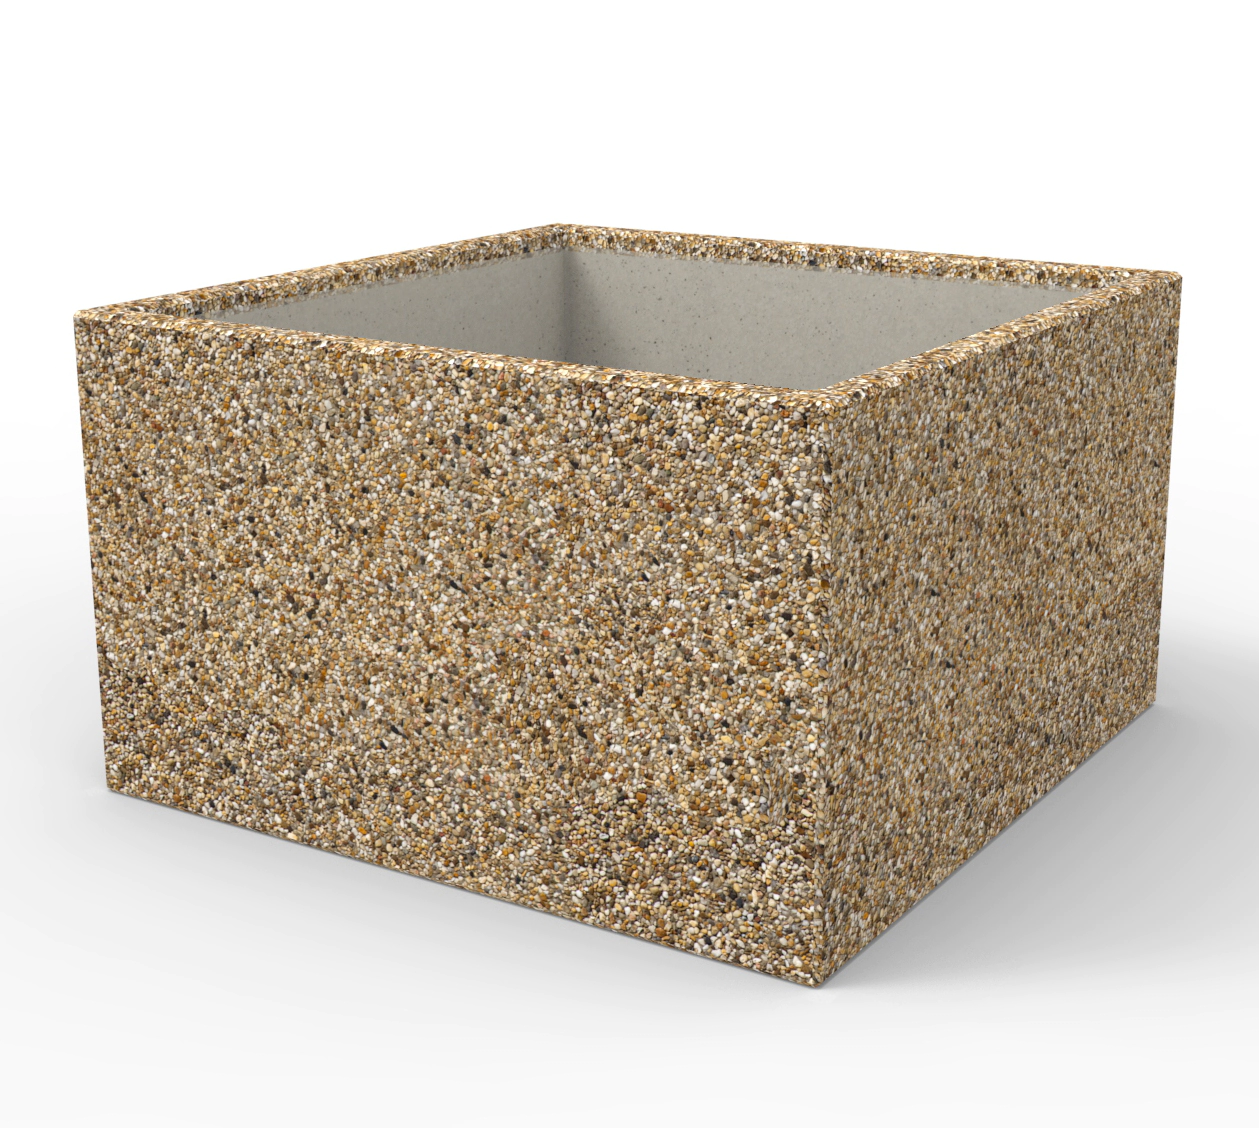 Donice ogrodowe BRYGIDA wykonane w technologii betonu płukanego z charakterystyczną warstwą odsłoniętego kruszywa, dzięki możliwości wykonania różnych produktów z tego samego materiału w prosty sposób można zaranżować miejsce do odpoczzynku w swoim ogrodzie.